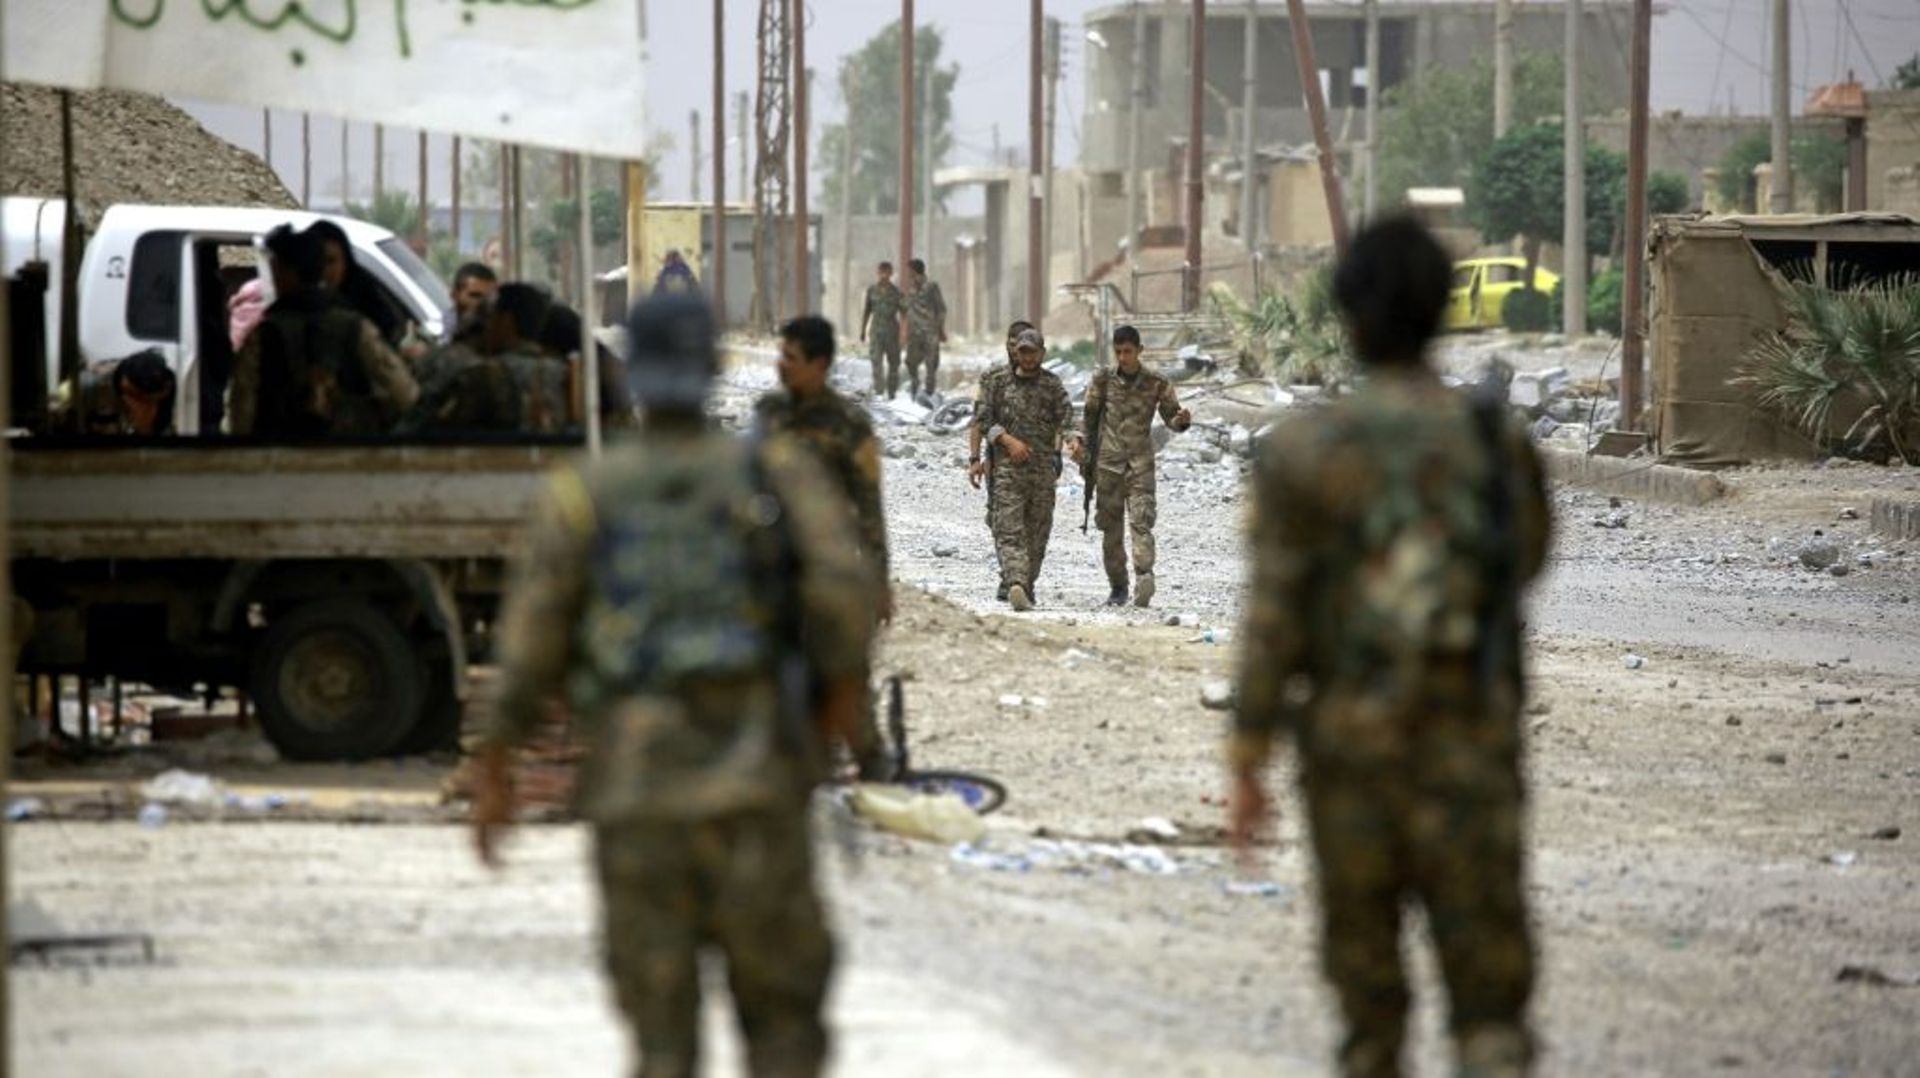 Des combattants des Forces démocratiques syriennes dans un quartier de l'Est de Raqa, lors d'une offensive contre le groupe Etat islamique, le 14 juin 2017